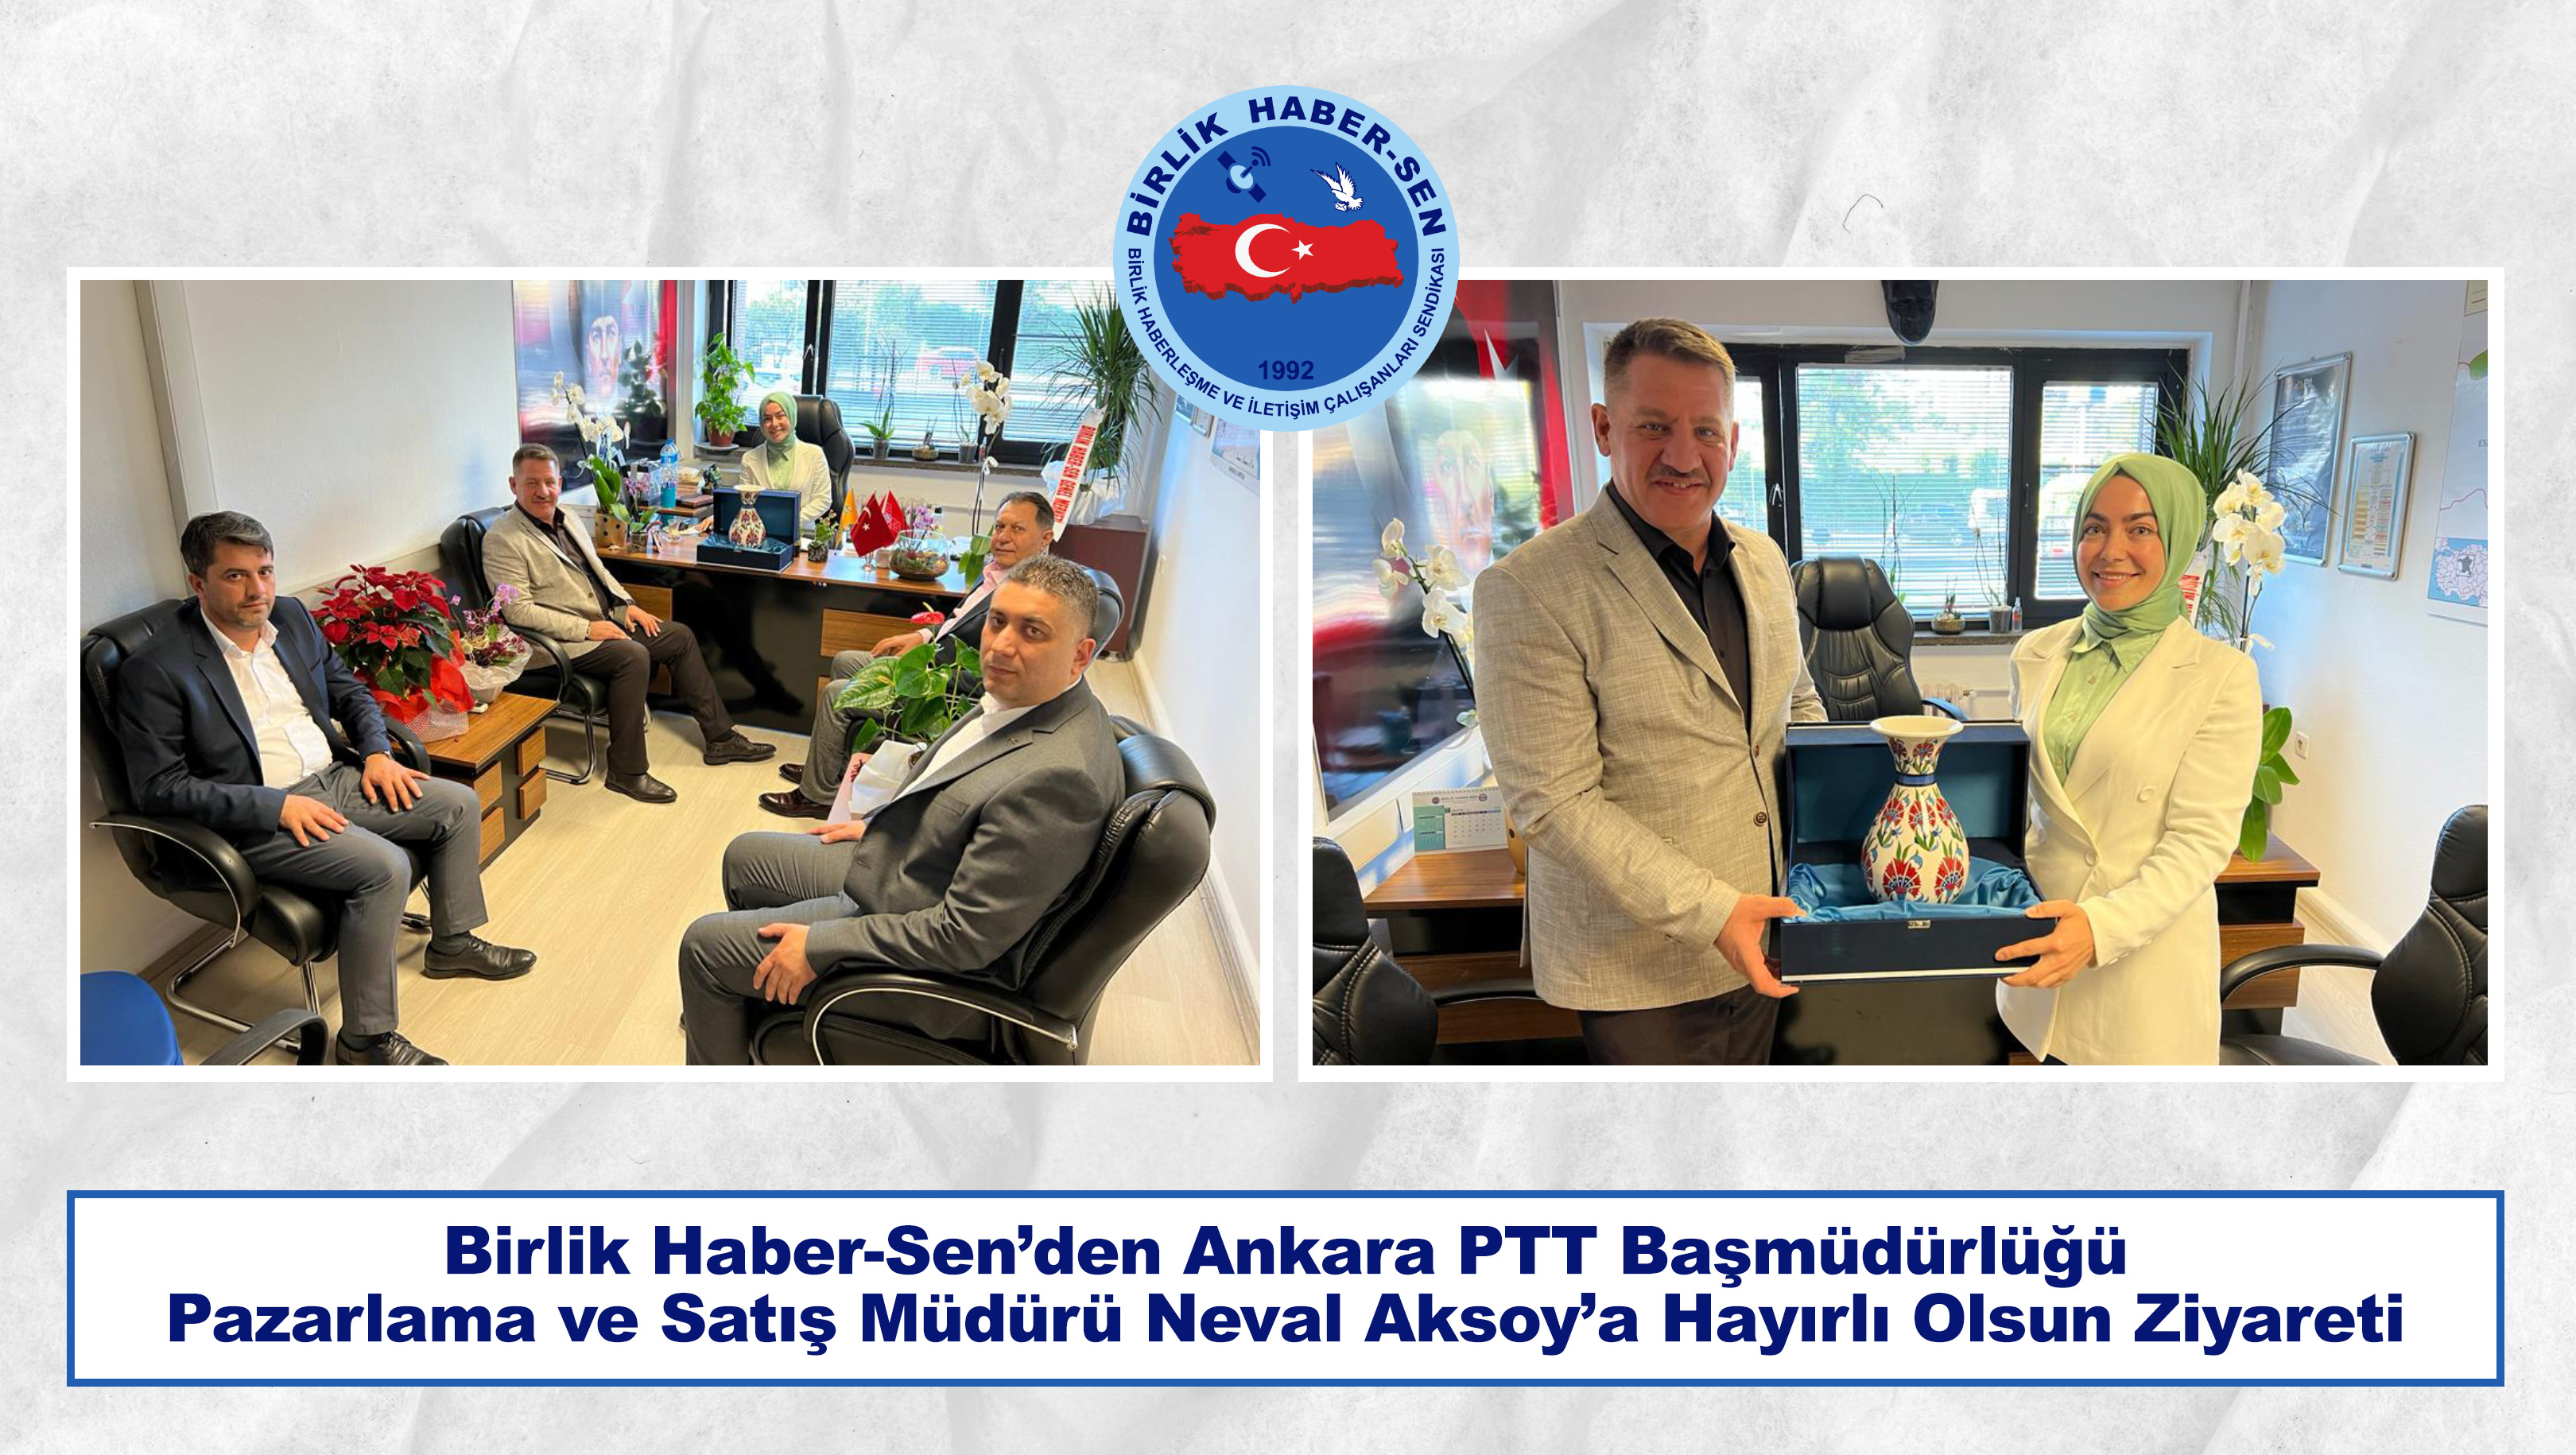 Birlik Haber-Sen’den Ankara PTT Başmüdürlüğü Pazarlama ve Satış Müdürü Neval Aksoy’a Hayırlı Olsun Ziyareti